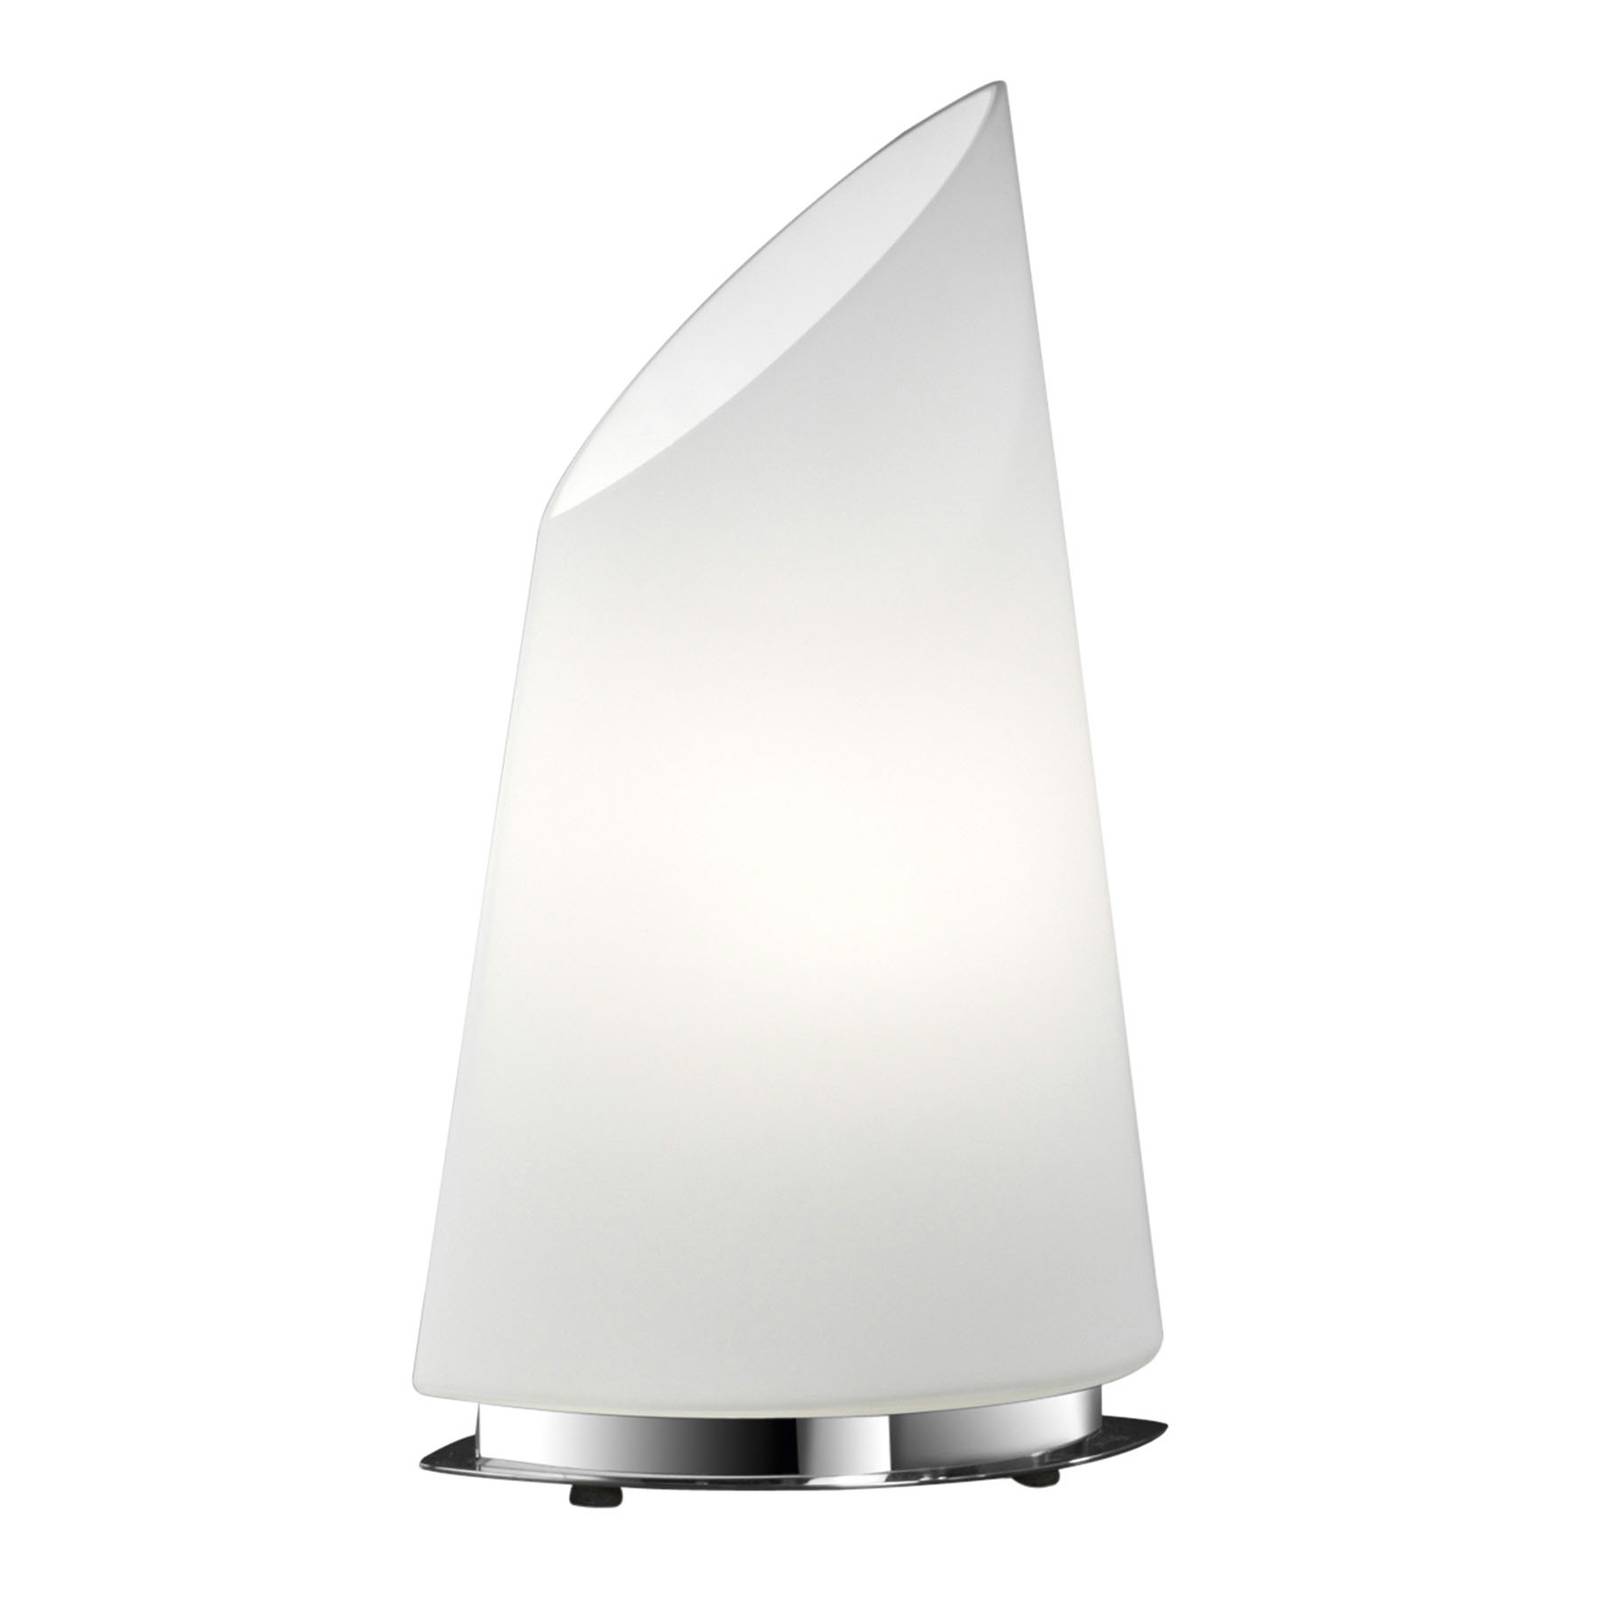 Bankamp sail üveg asztali lámpa, magasság 33cm